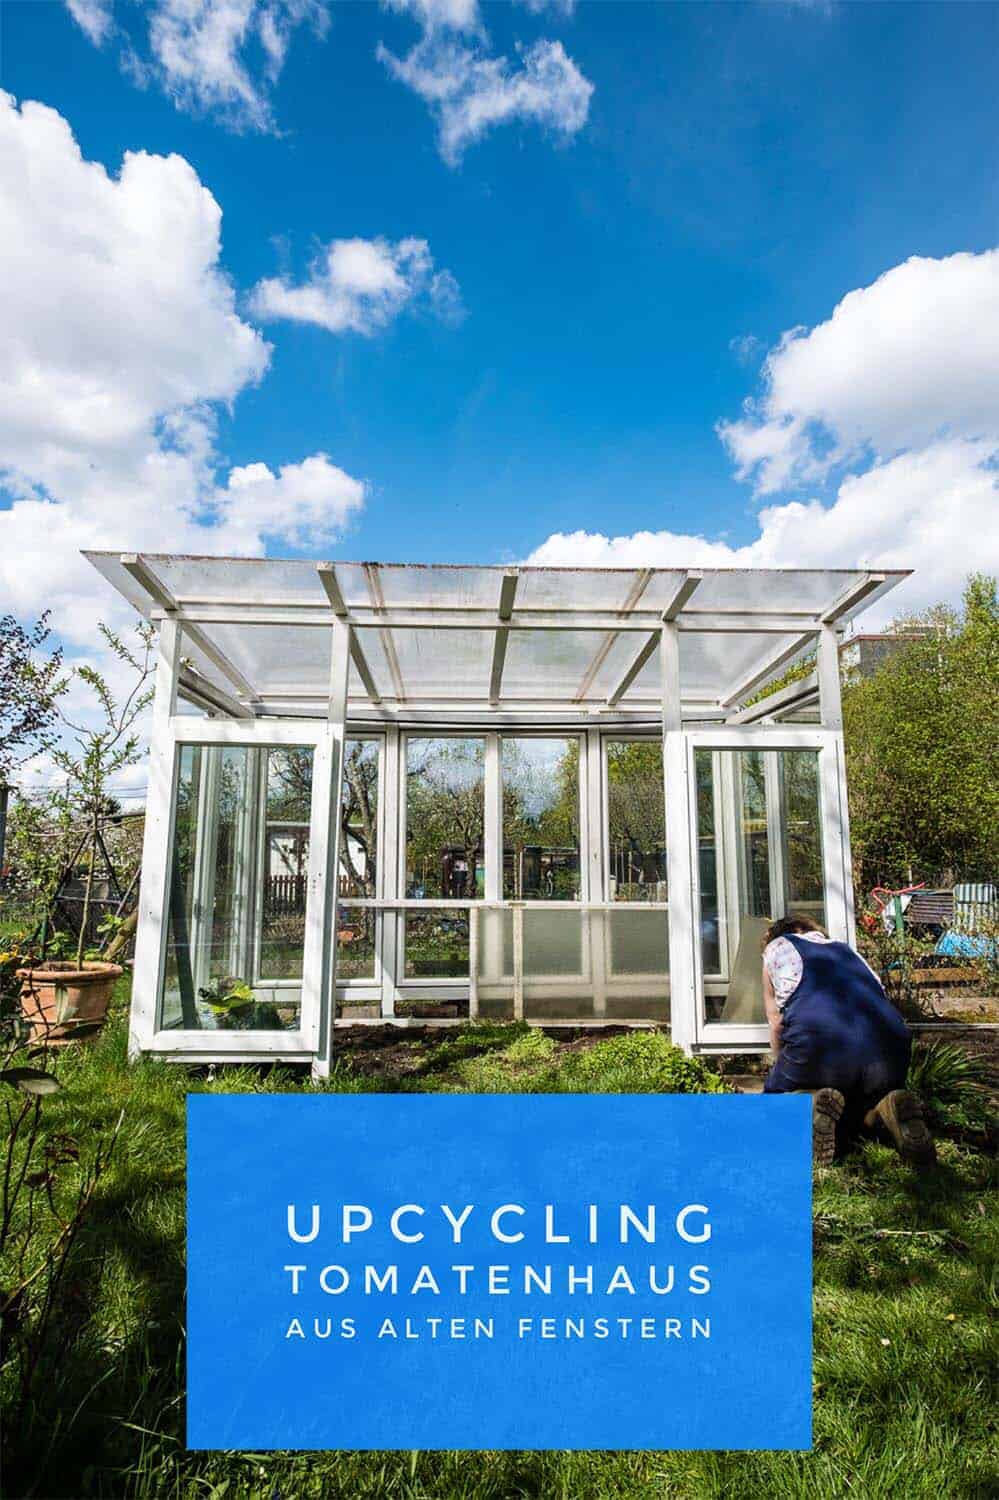 Upcycling-Projekt: Tomatenhaus aus alten Fenstern. Detailierte Bauanleitung mit Materialliste, Kostenaufstellung, vielen schönen Bildern. Einfach Nachbauen.